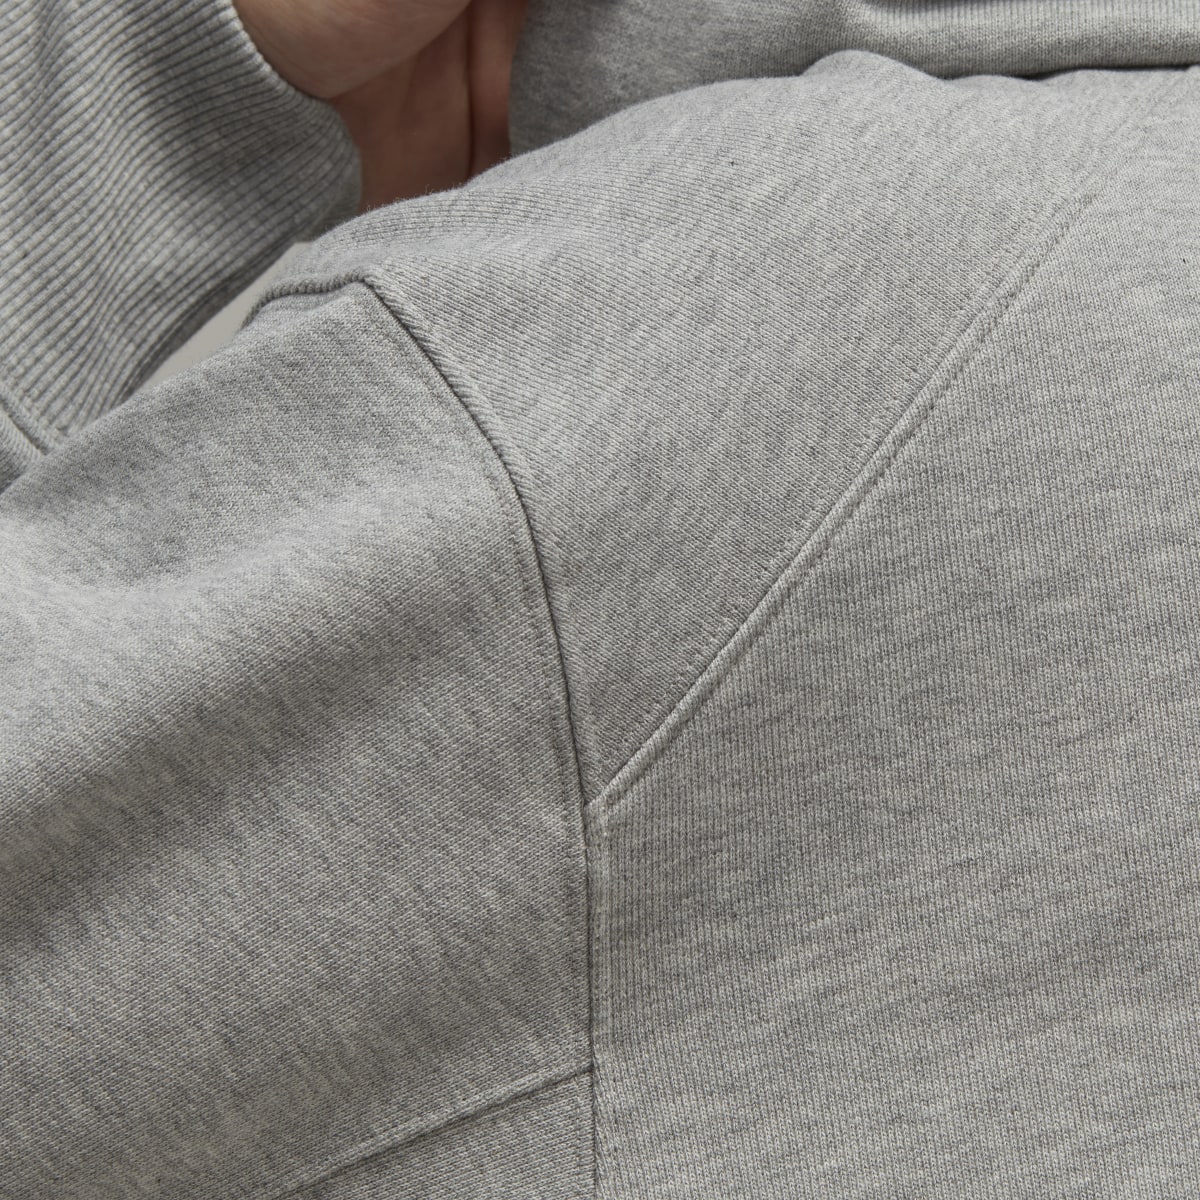 Adidas Sweat-shirt à capuche ras-du-cou en coton bio Y-3. 8